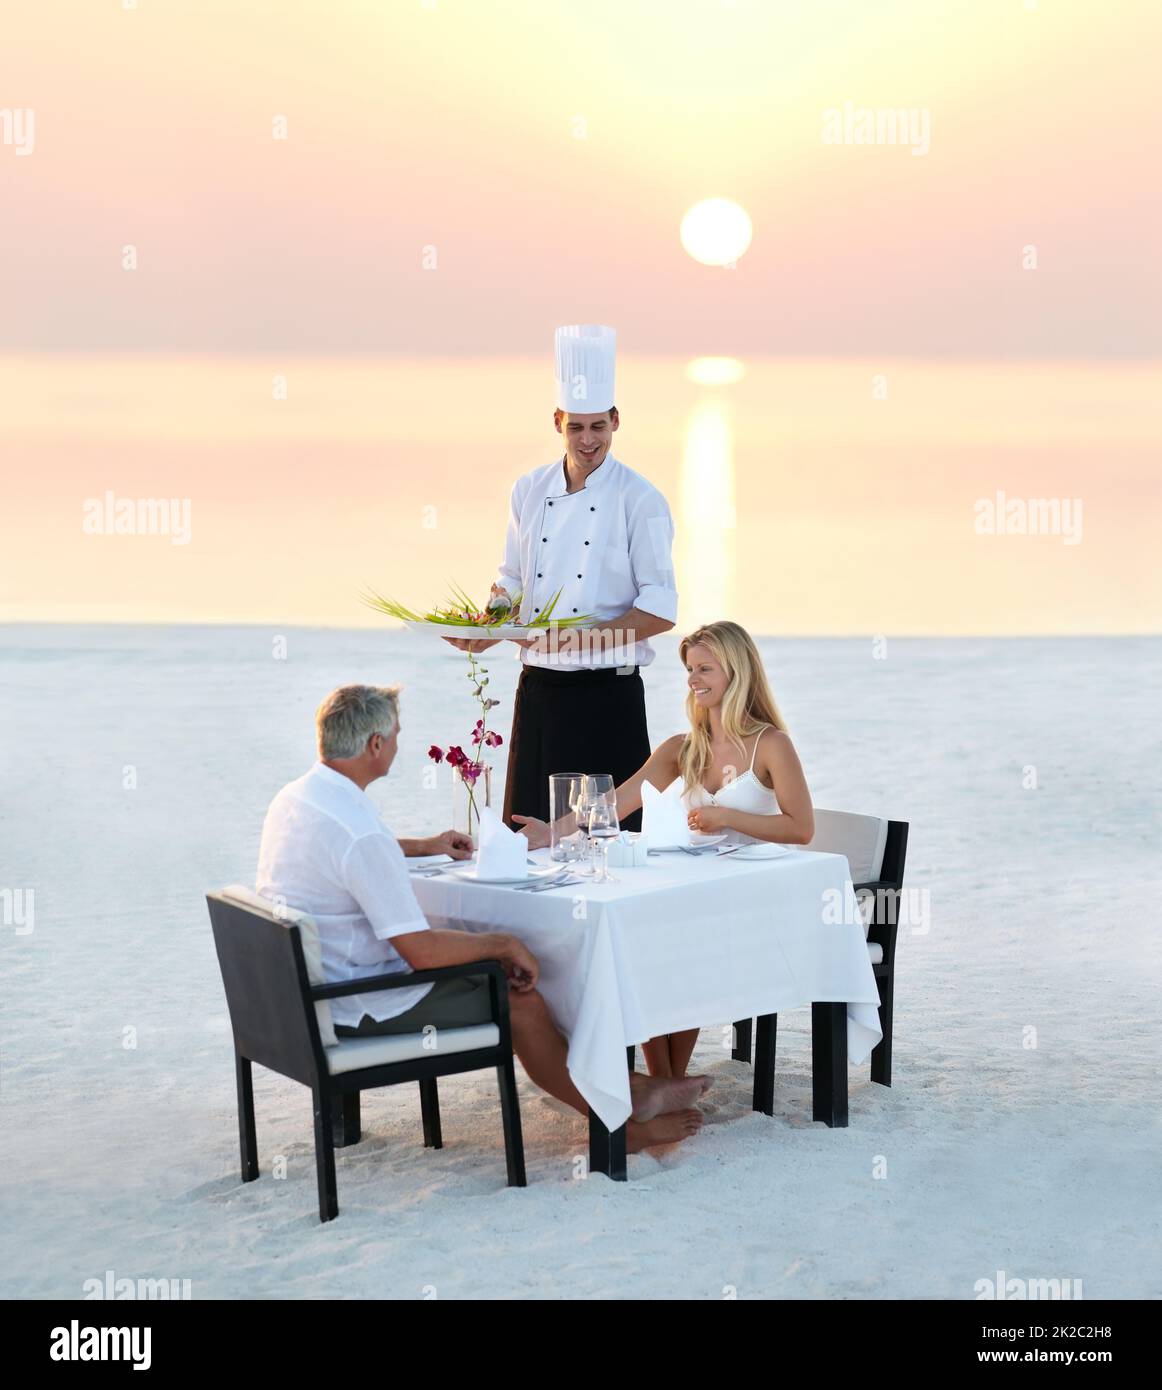 La cena romántica perfecta. Foto de una pareja adulta disfrutando de una cena romántica en la playa. Foto de stock